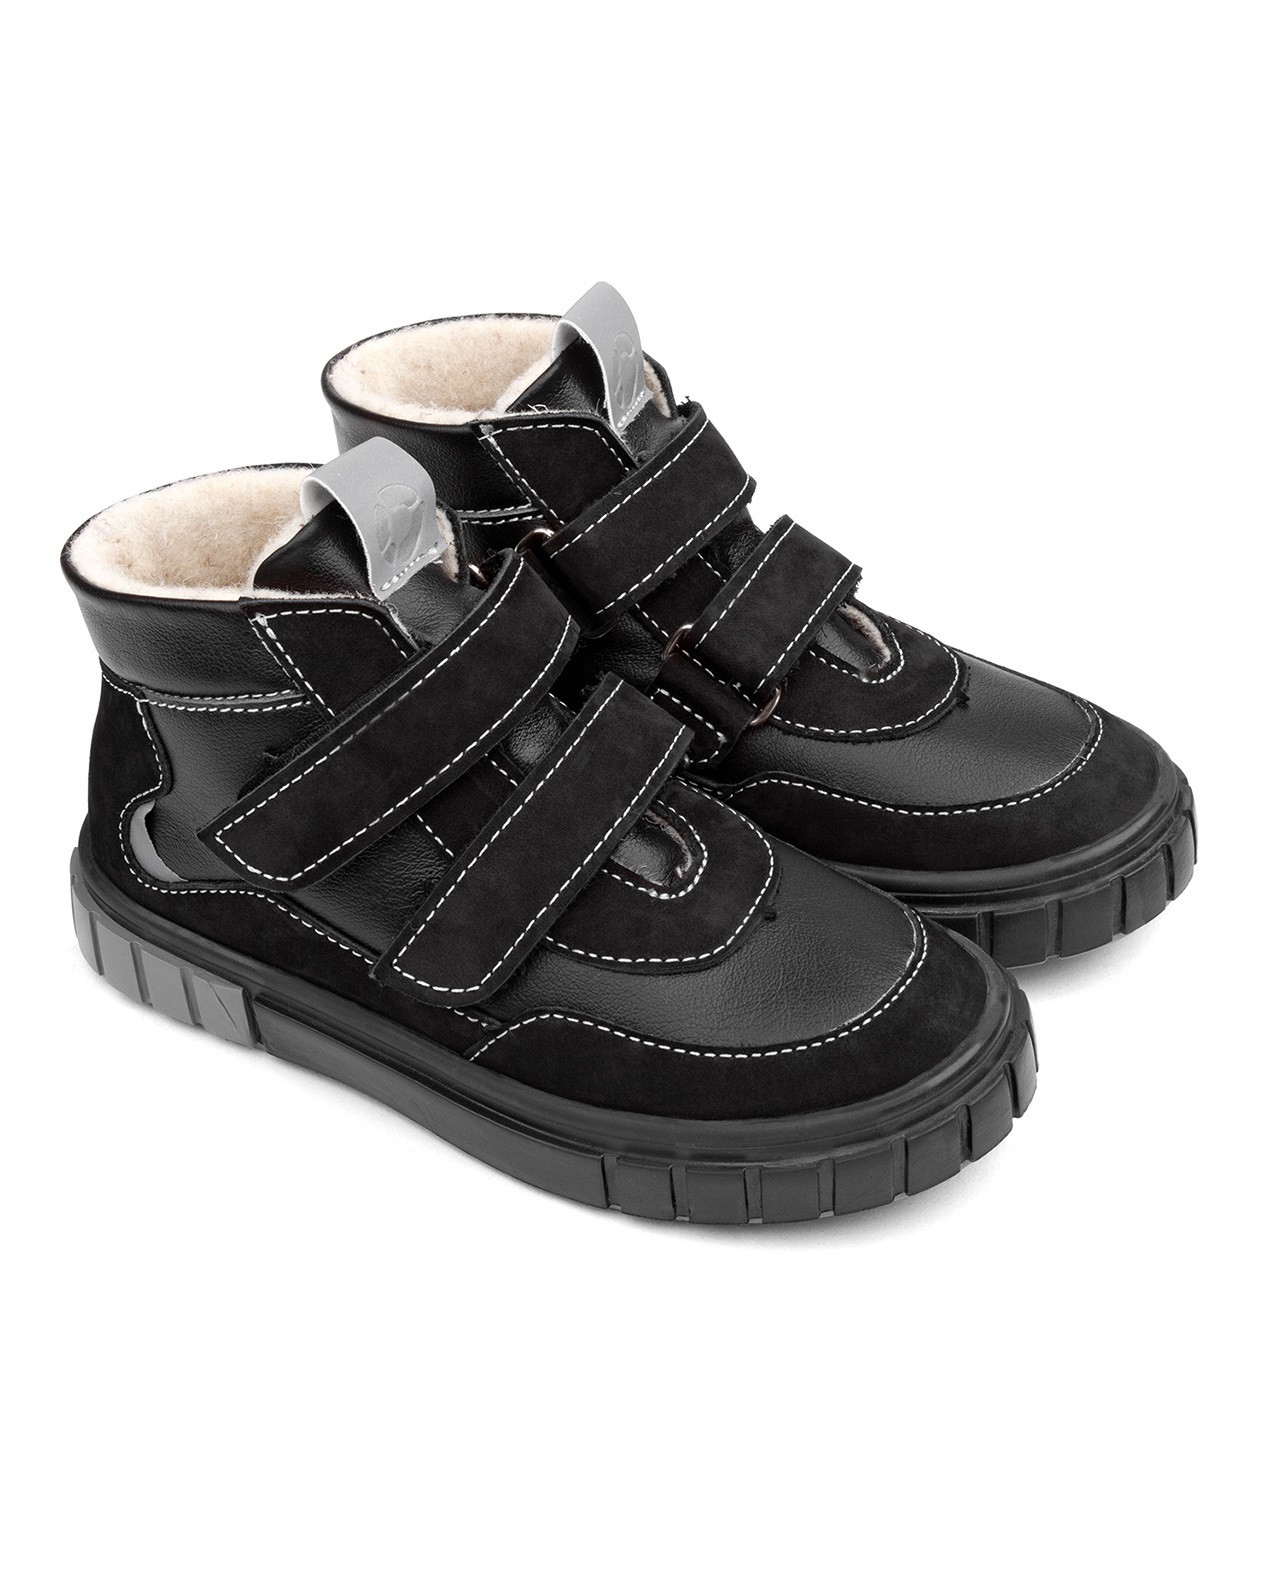 Ботинки детские Tapiboo МИЛАН (79790, 29) цена и фото